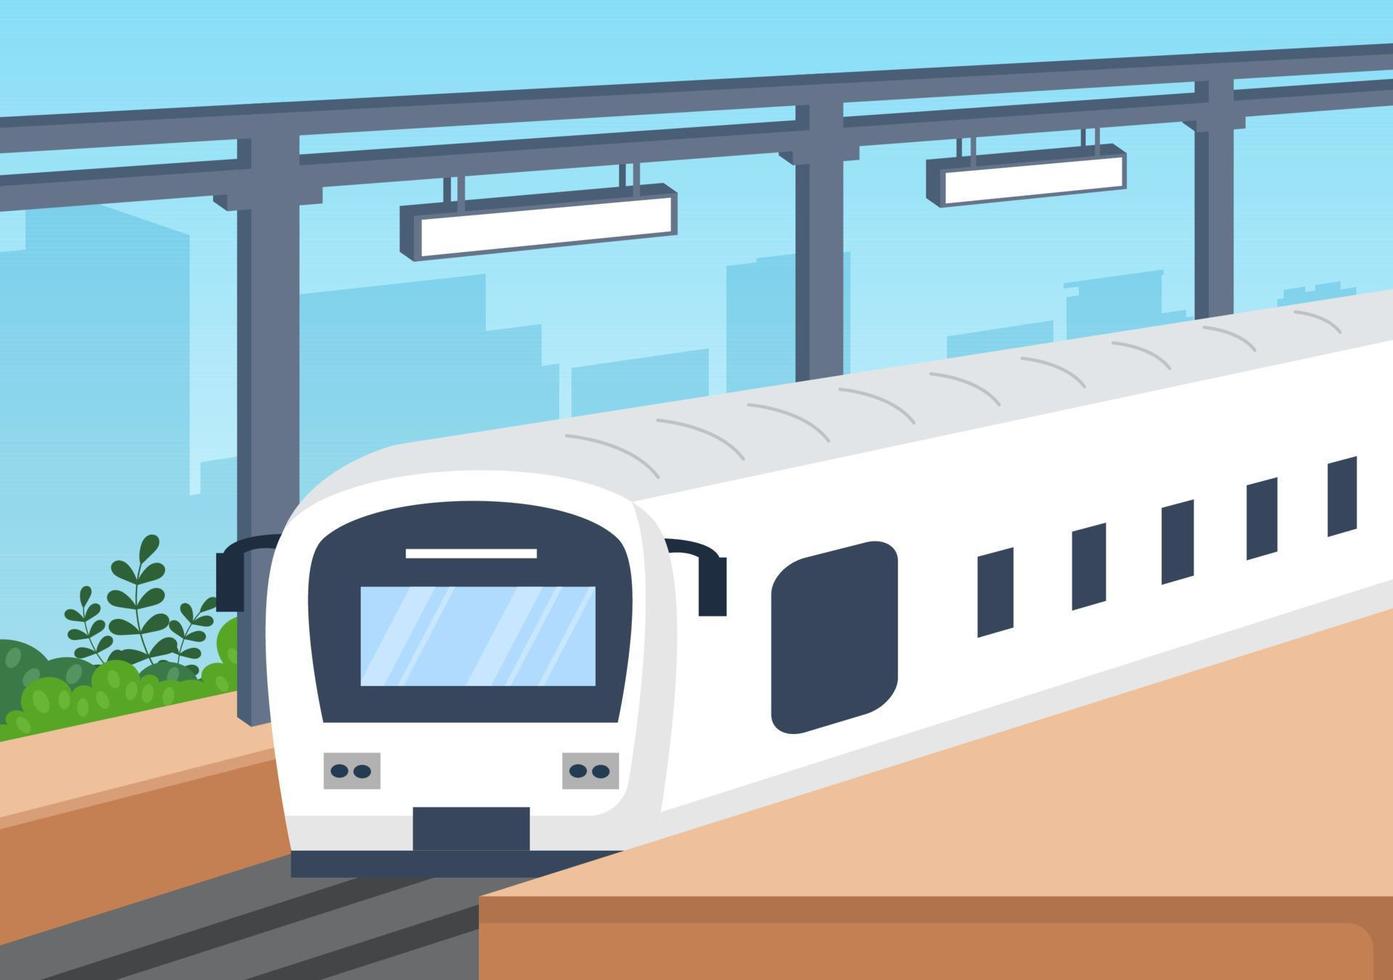 estação ferroviária com cenário de transporte de trem, plataforma para partida e metrô interior subterrâneo em ilustração de cartaz de fundo plano vetor